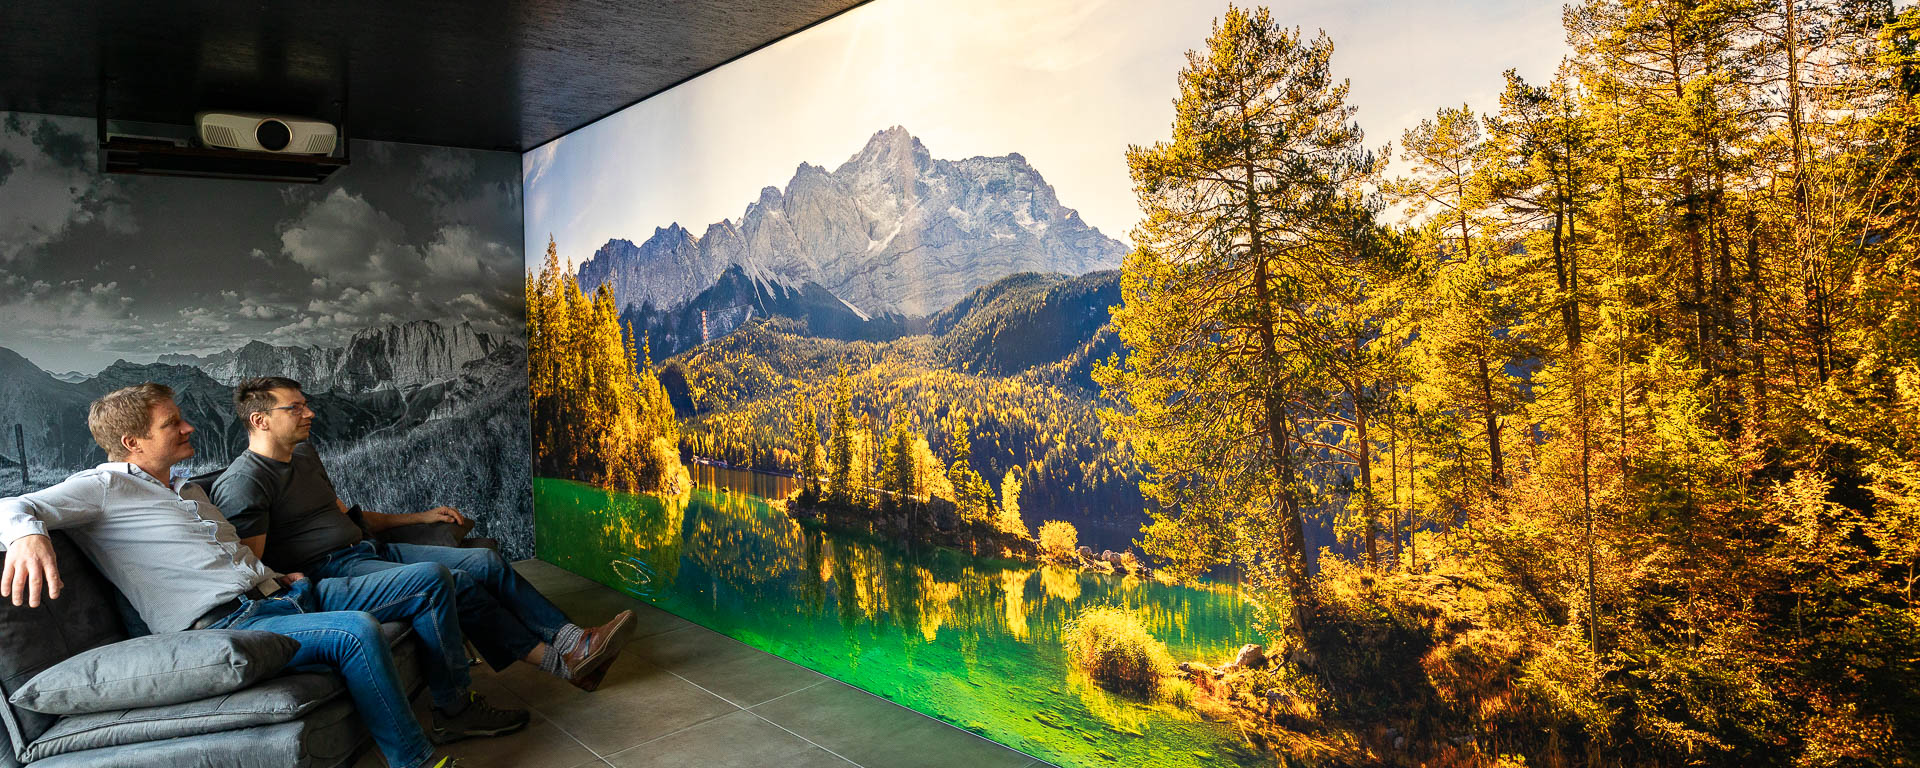 Karwendel und Wetterstein - Wandbilder